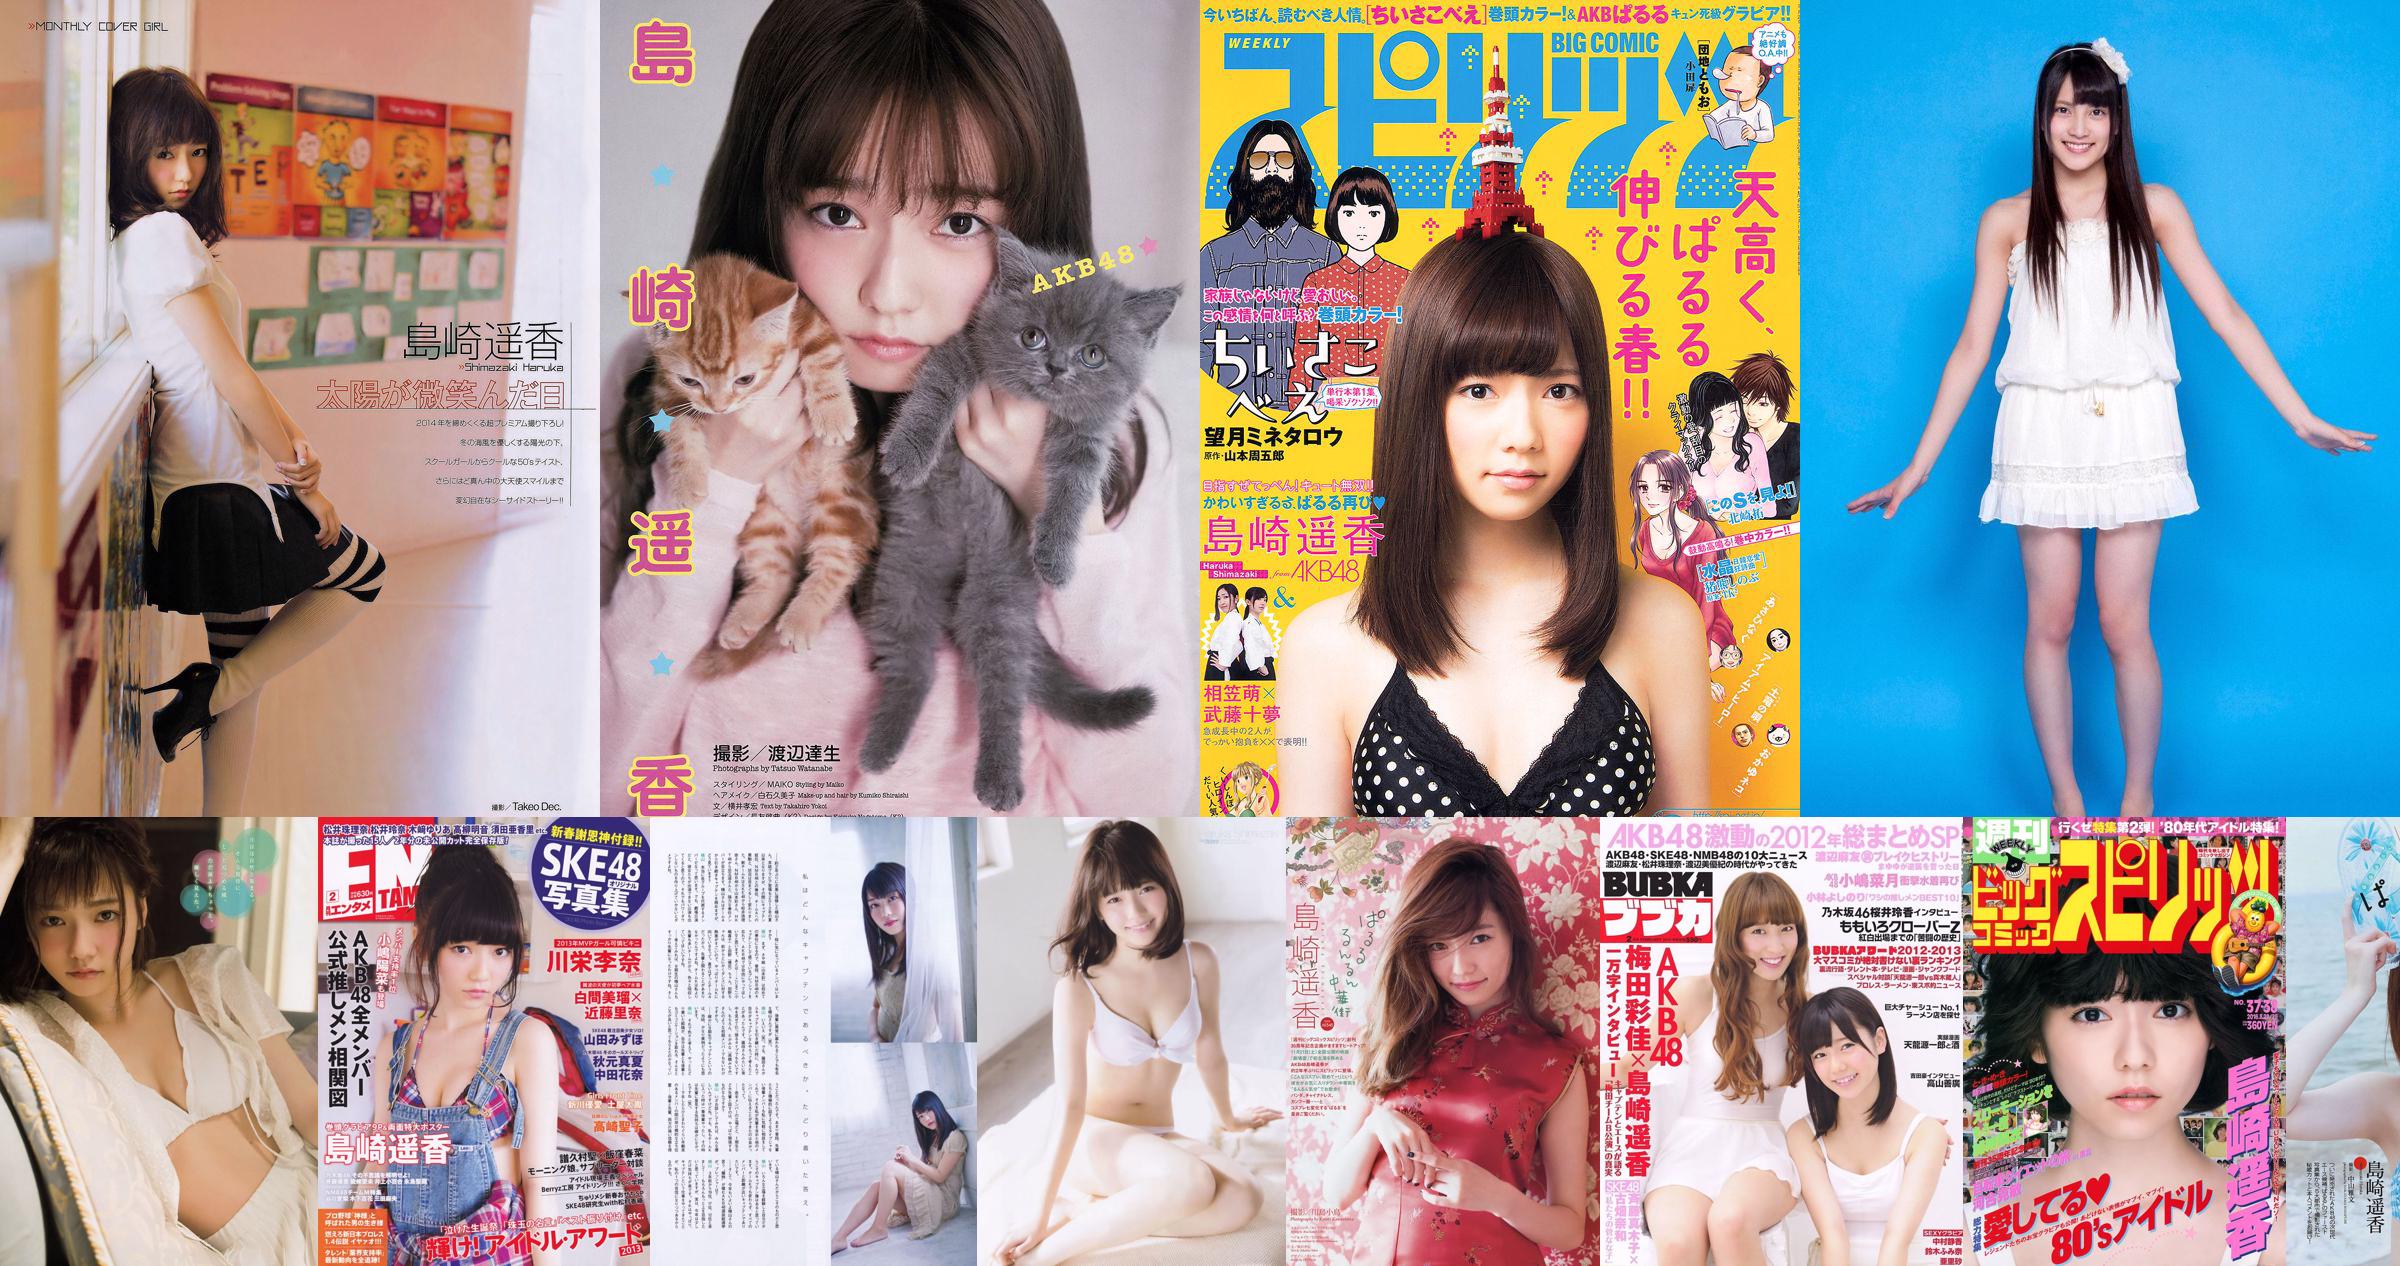 [Young Magazine] Haruka Shimazaki 2014 No.51 Foto No.55842f Seite 2